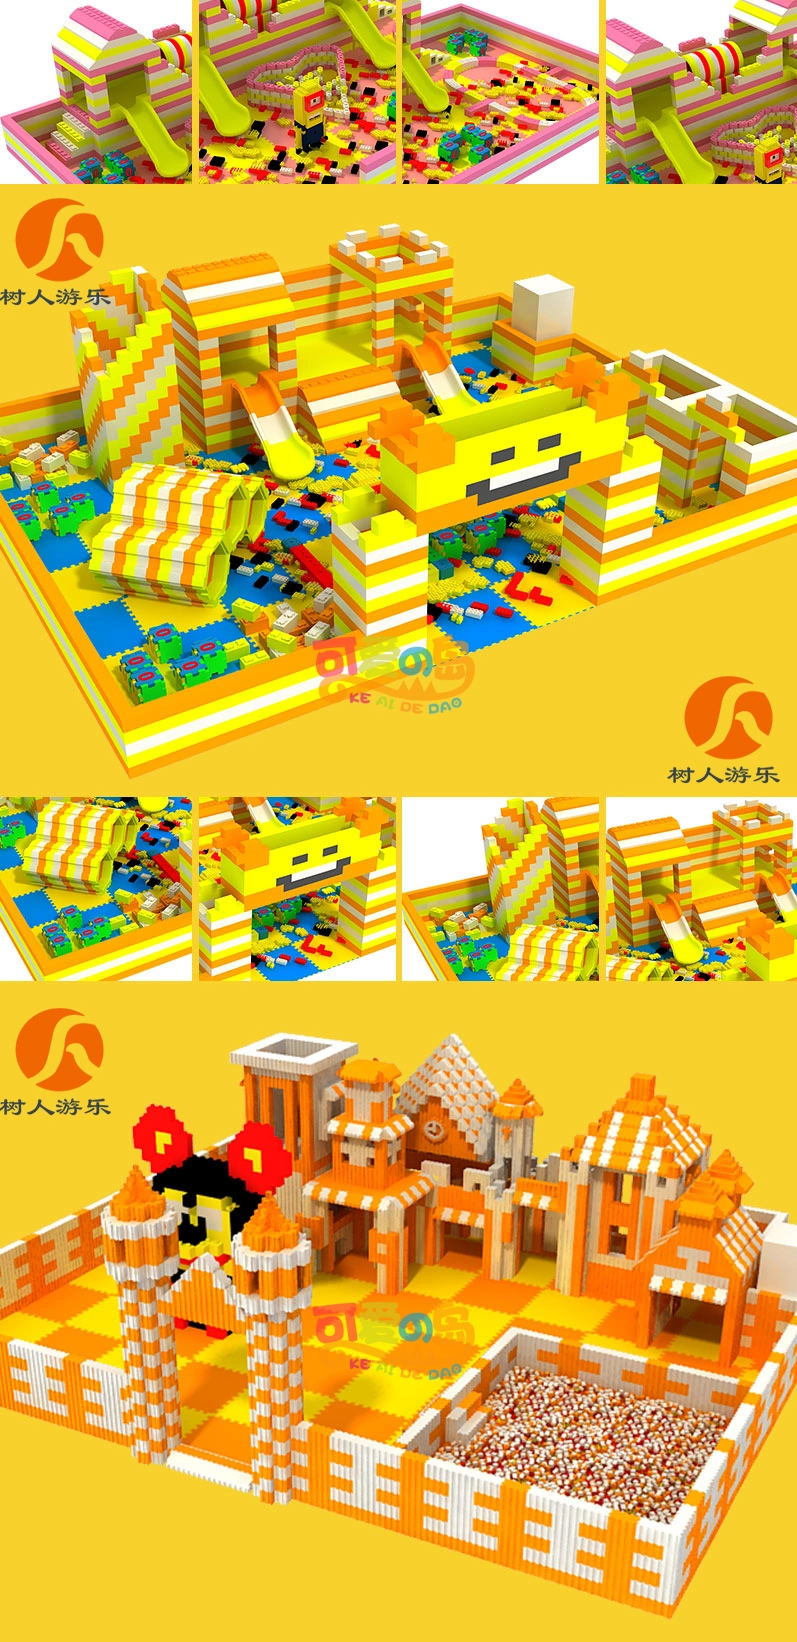 Building Bricks and Blocks Bricks Prices Blocks Toys for Kids Playground